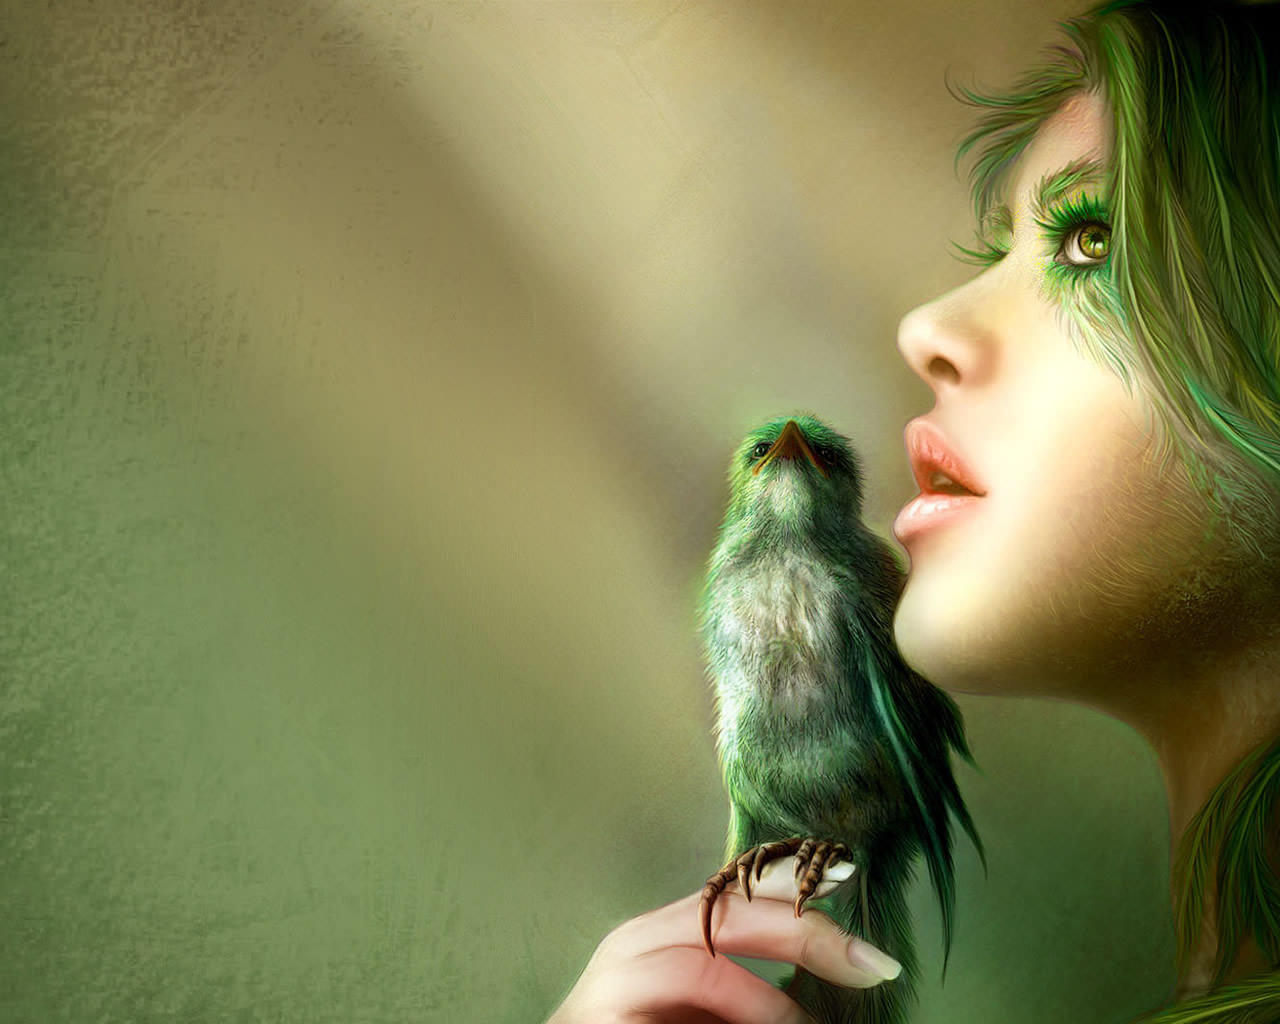 nuovo download di sfondi 3d,verde,uccello,mano,colibrì,occhio